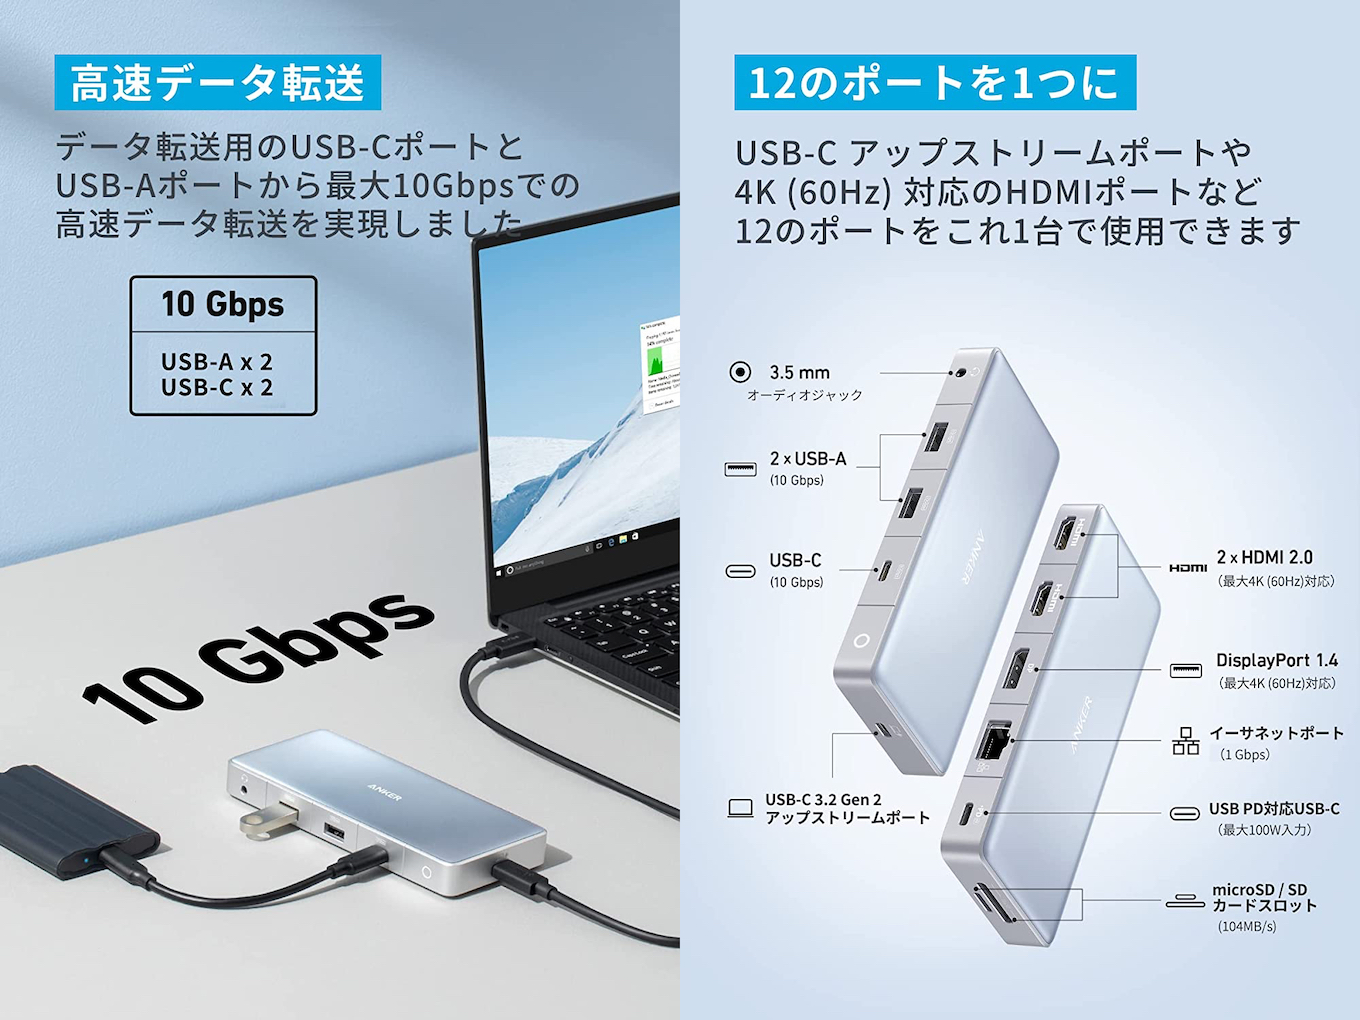 Anker 575 USB-C ハブのポート構成